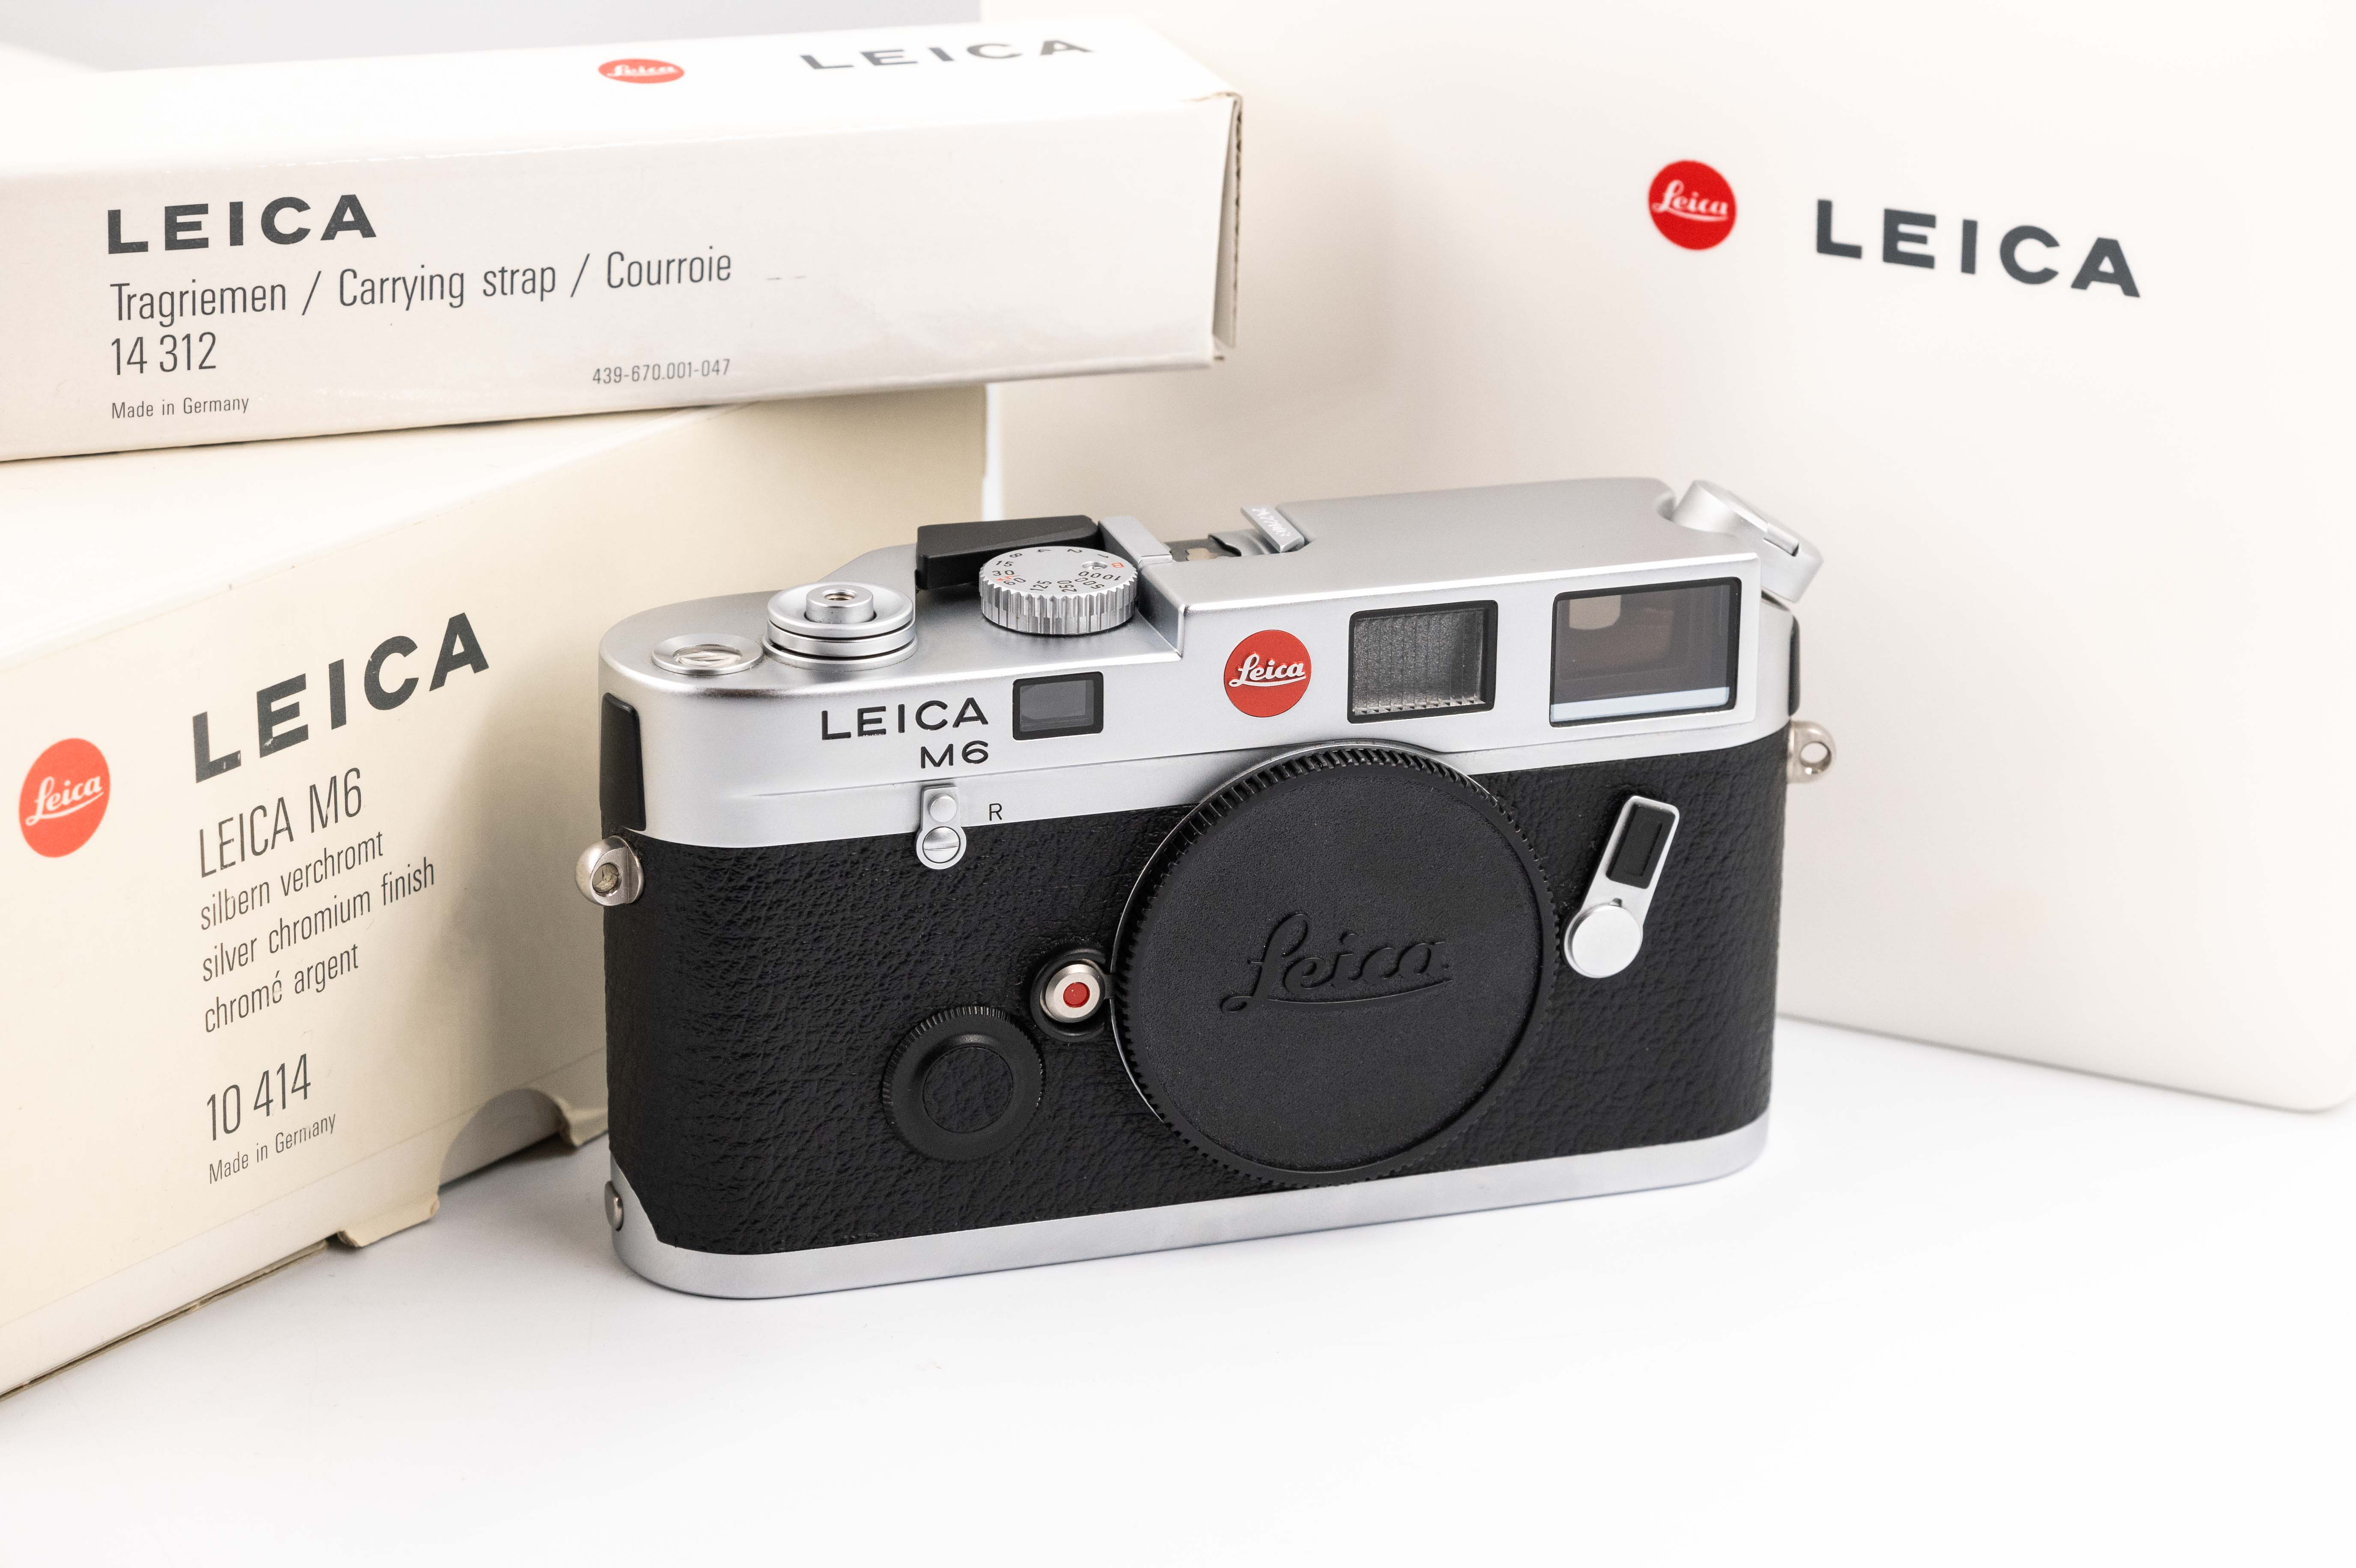 Leica M6 Classic Wetzlar 0.72x Silver Chrome 10414